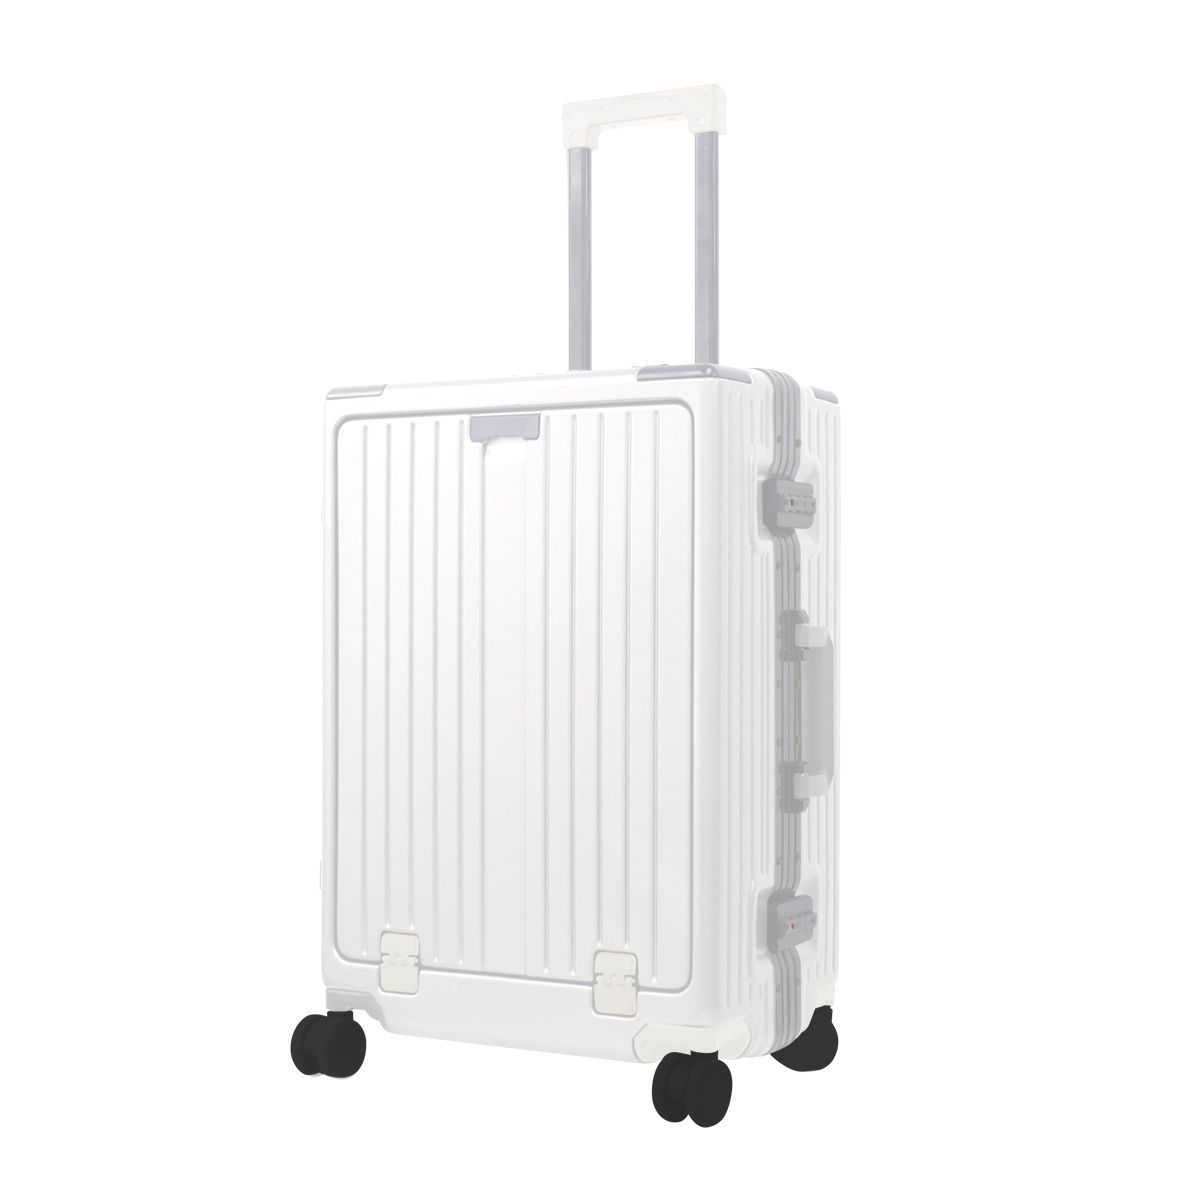 スーツケース Mサイズ フロントオープン USBポート キャリーバッグ キャリーケース TSAロック おしゃれ 多機能 旅行かばん 旅行 4泊 5泊  6泊